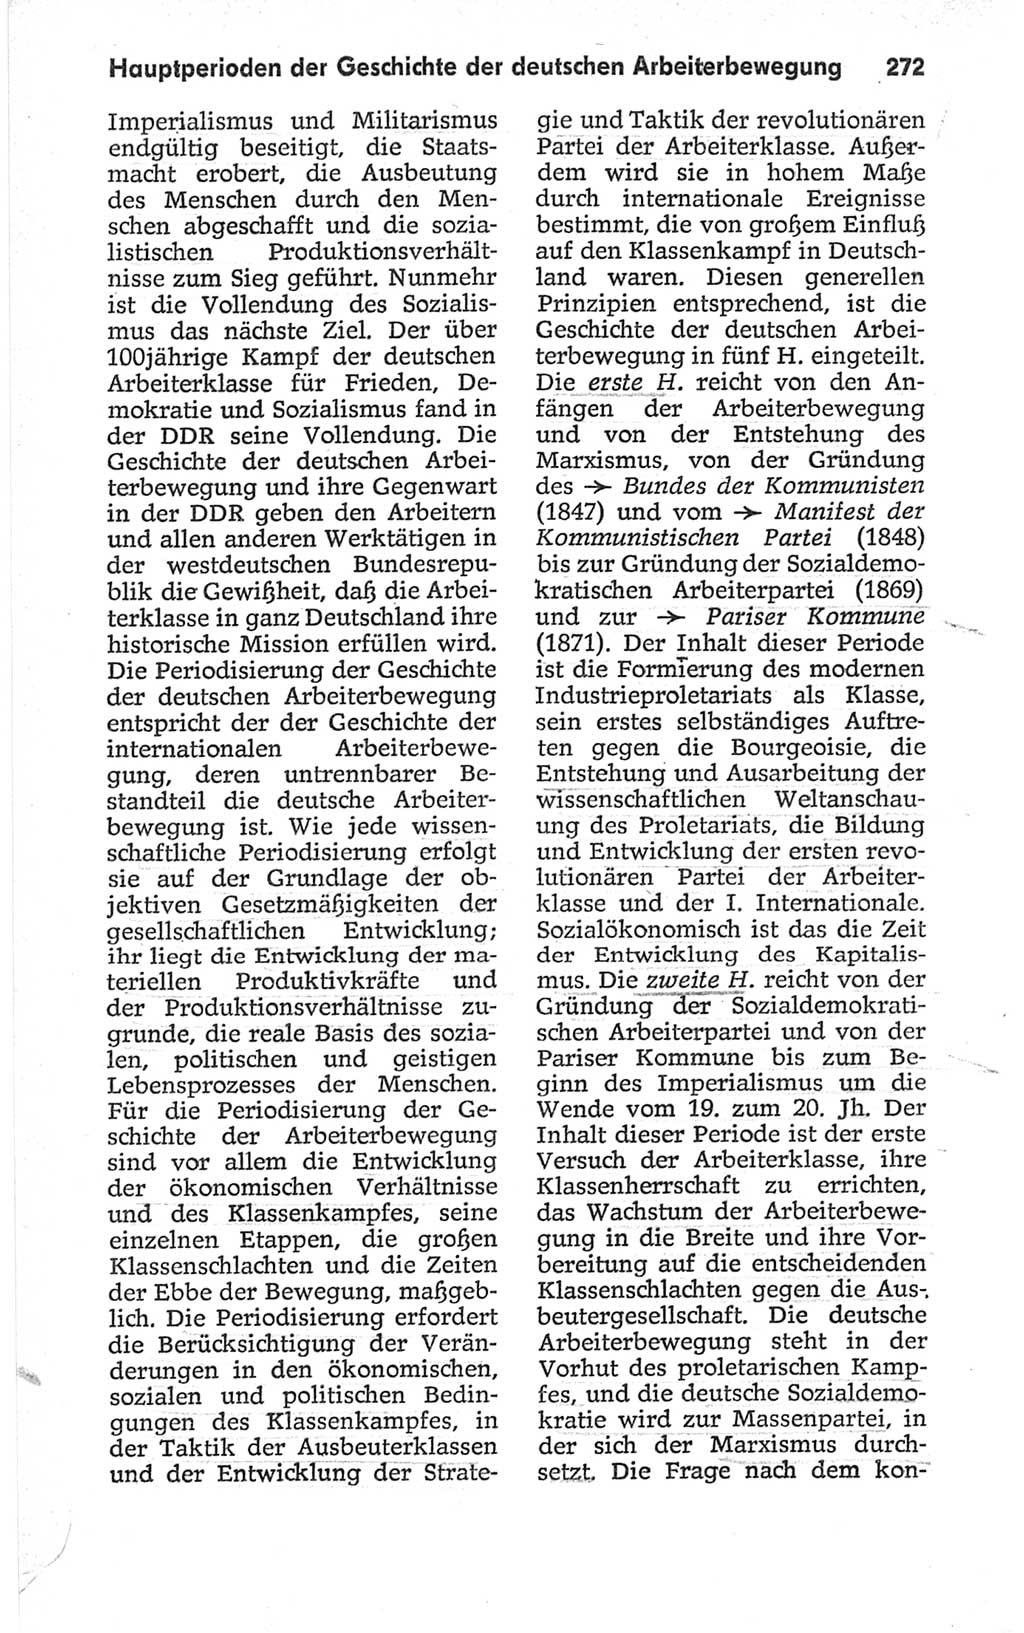 Kleines politisches Wörterbuch [Deutsche Demokratische Republik (DDR)] 1967, Seite 272 (Kl. pol. Wb. DDR 1967, S. 272)